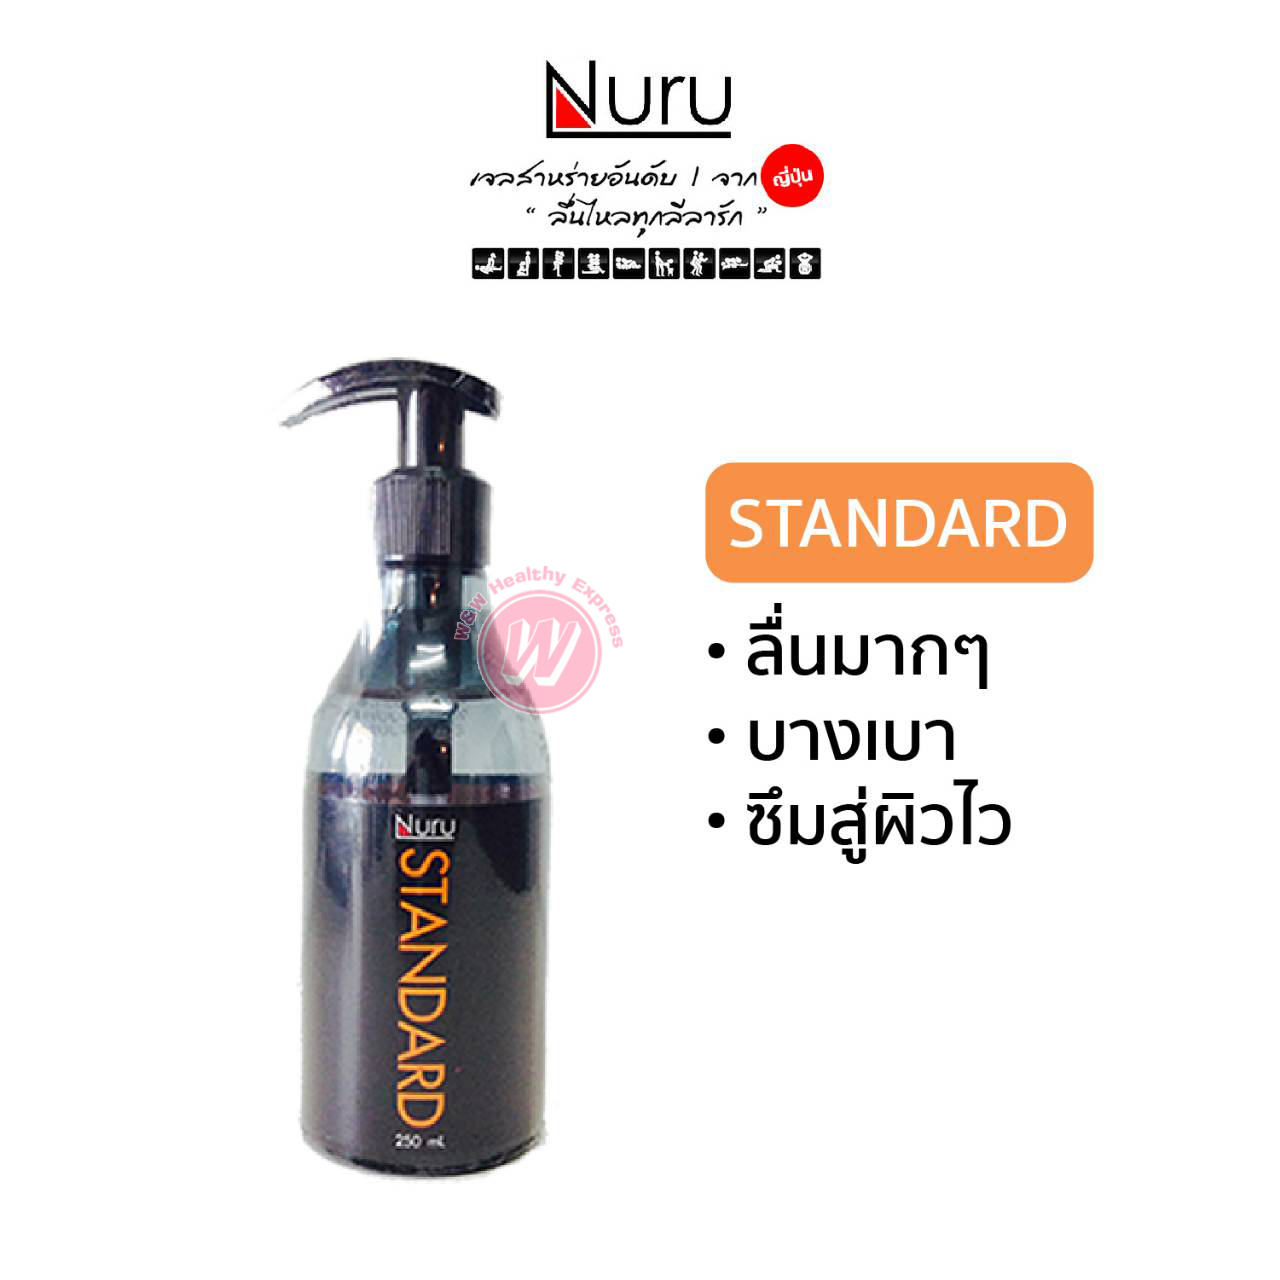 Nuru gel standard 250 ml - เจลหล่อลื่น นูรุเจล เจลหล่อลื่นผู้หญิง ผลิตภัณฑ์เสริมรัก เจลหล่อลื่นสูตรน้ำ ดีกว่า KY gel เควาย เจล